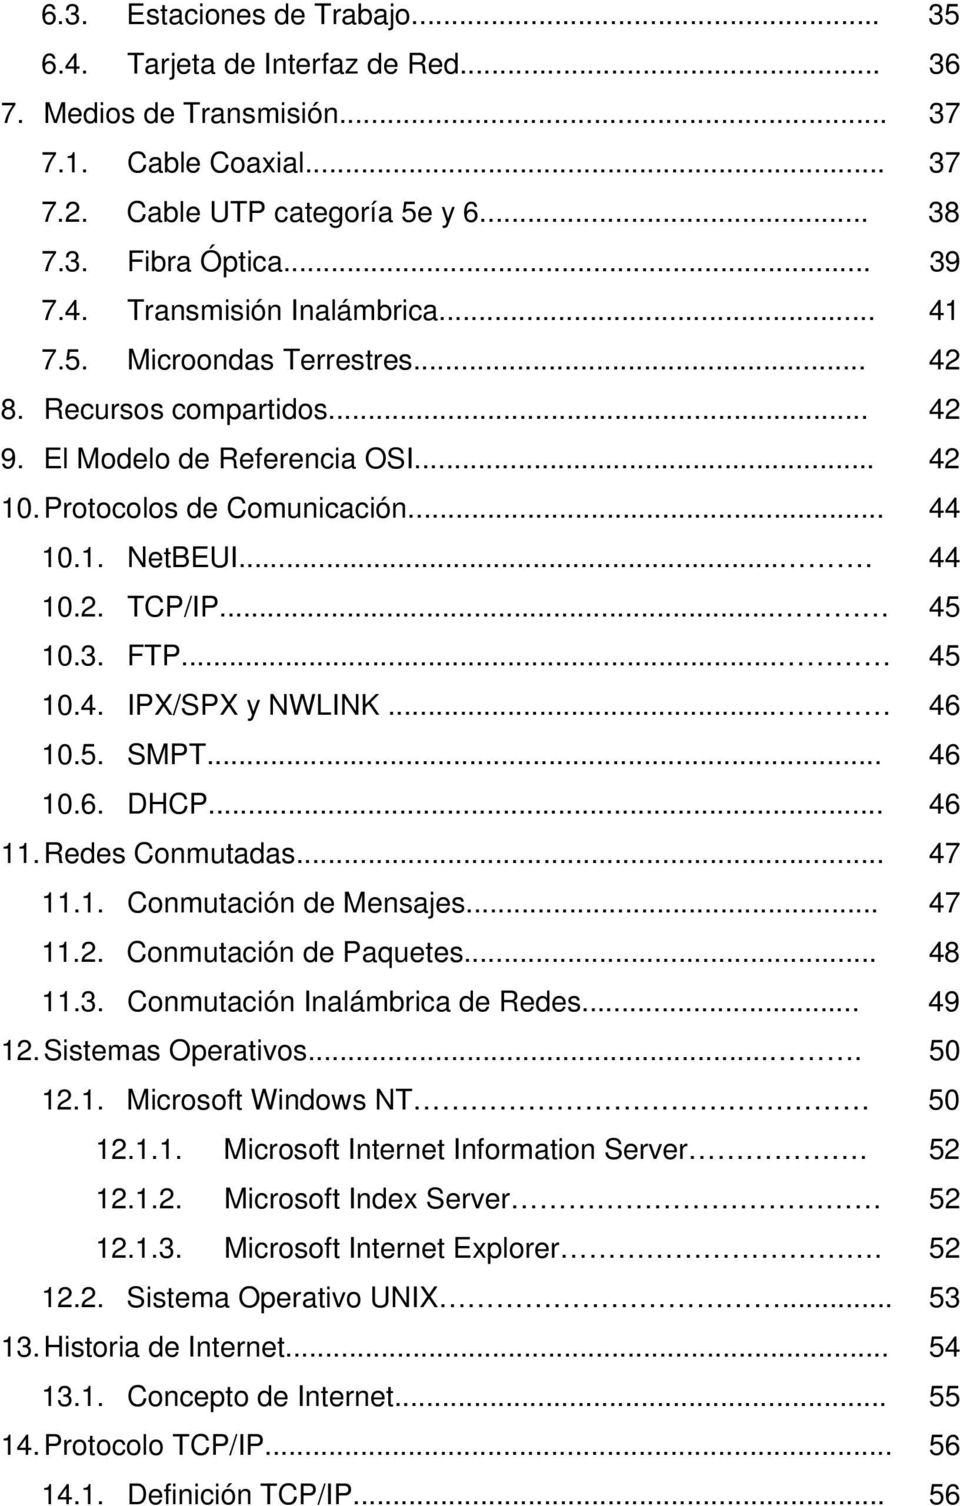 .. 46 10.5. SMPT... 46 10.6. DHCP... 46 11. Redes Conmutadas... 47 11.1. Conmutación de Mensajes... 47 11.2. Conmutación de Paquetes... 48 11.3. Conmutación Inalámbrica de Redes... 49 12.